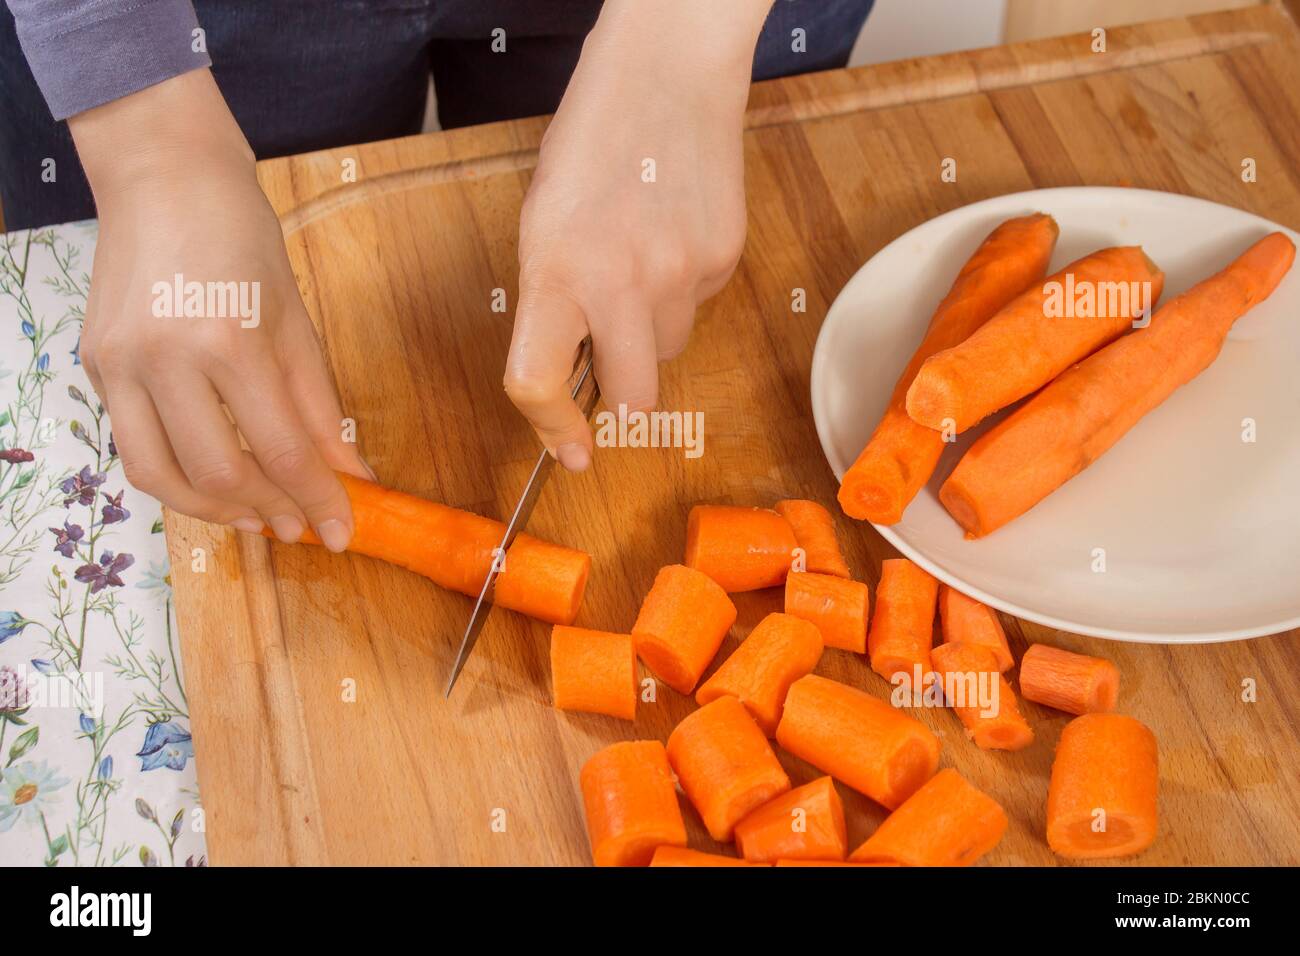 La donna taglia le carote sul tavolo da cucina con un coltello